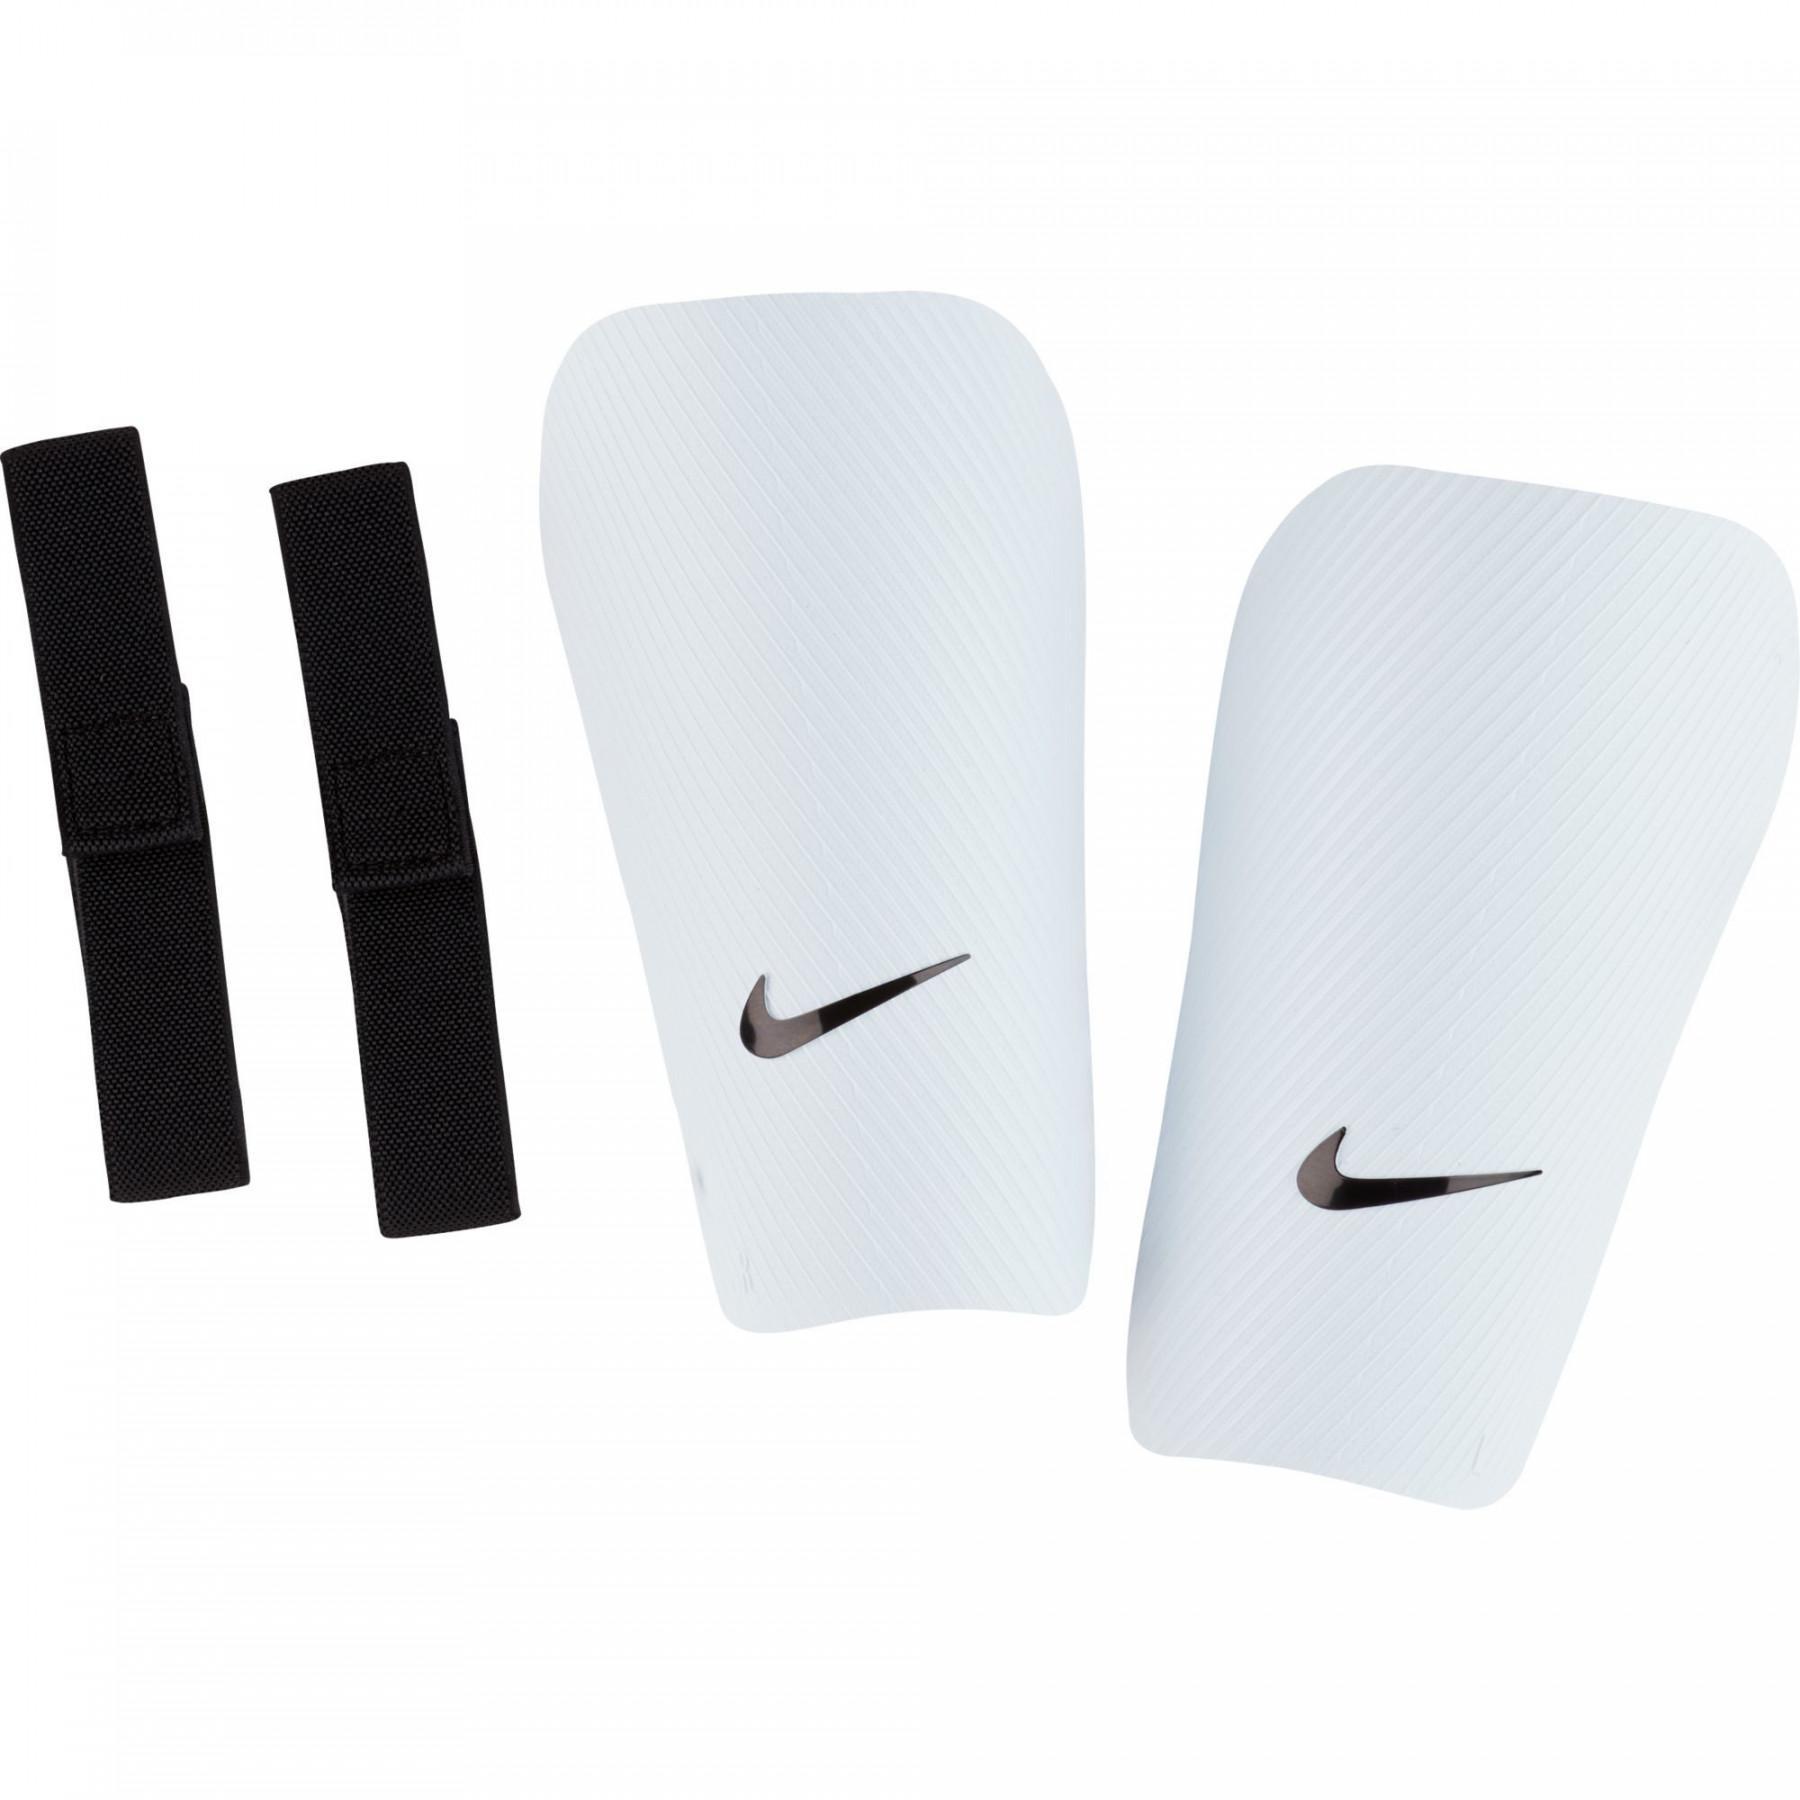 Ochraniacze goleni Nike J CE